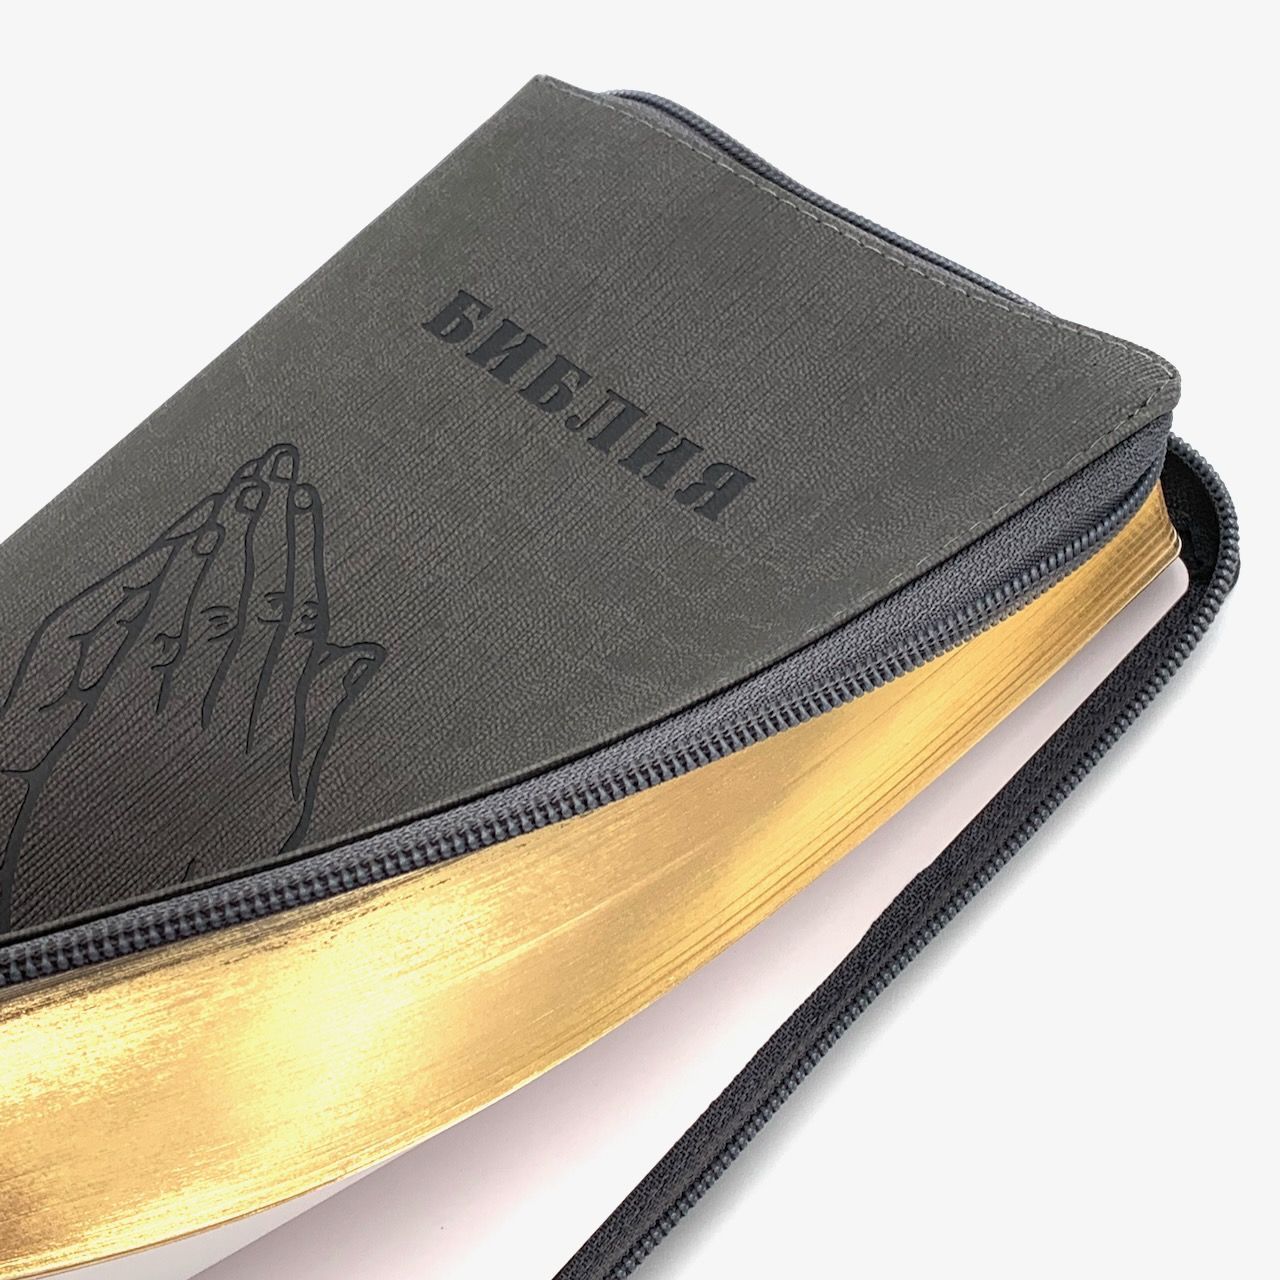 Библия 055z код H1/D2 переплет из искусственной кожи на молнии, цвет серый графит ребристый, дизайн "руки молящегося", средний формат, 143*220 мм, параллельные места по центру страницы, золотой обрез, крупный шрифт